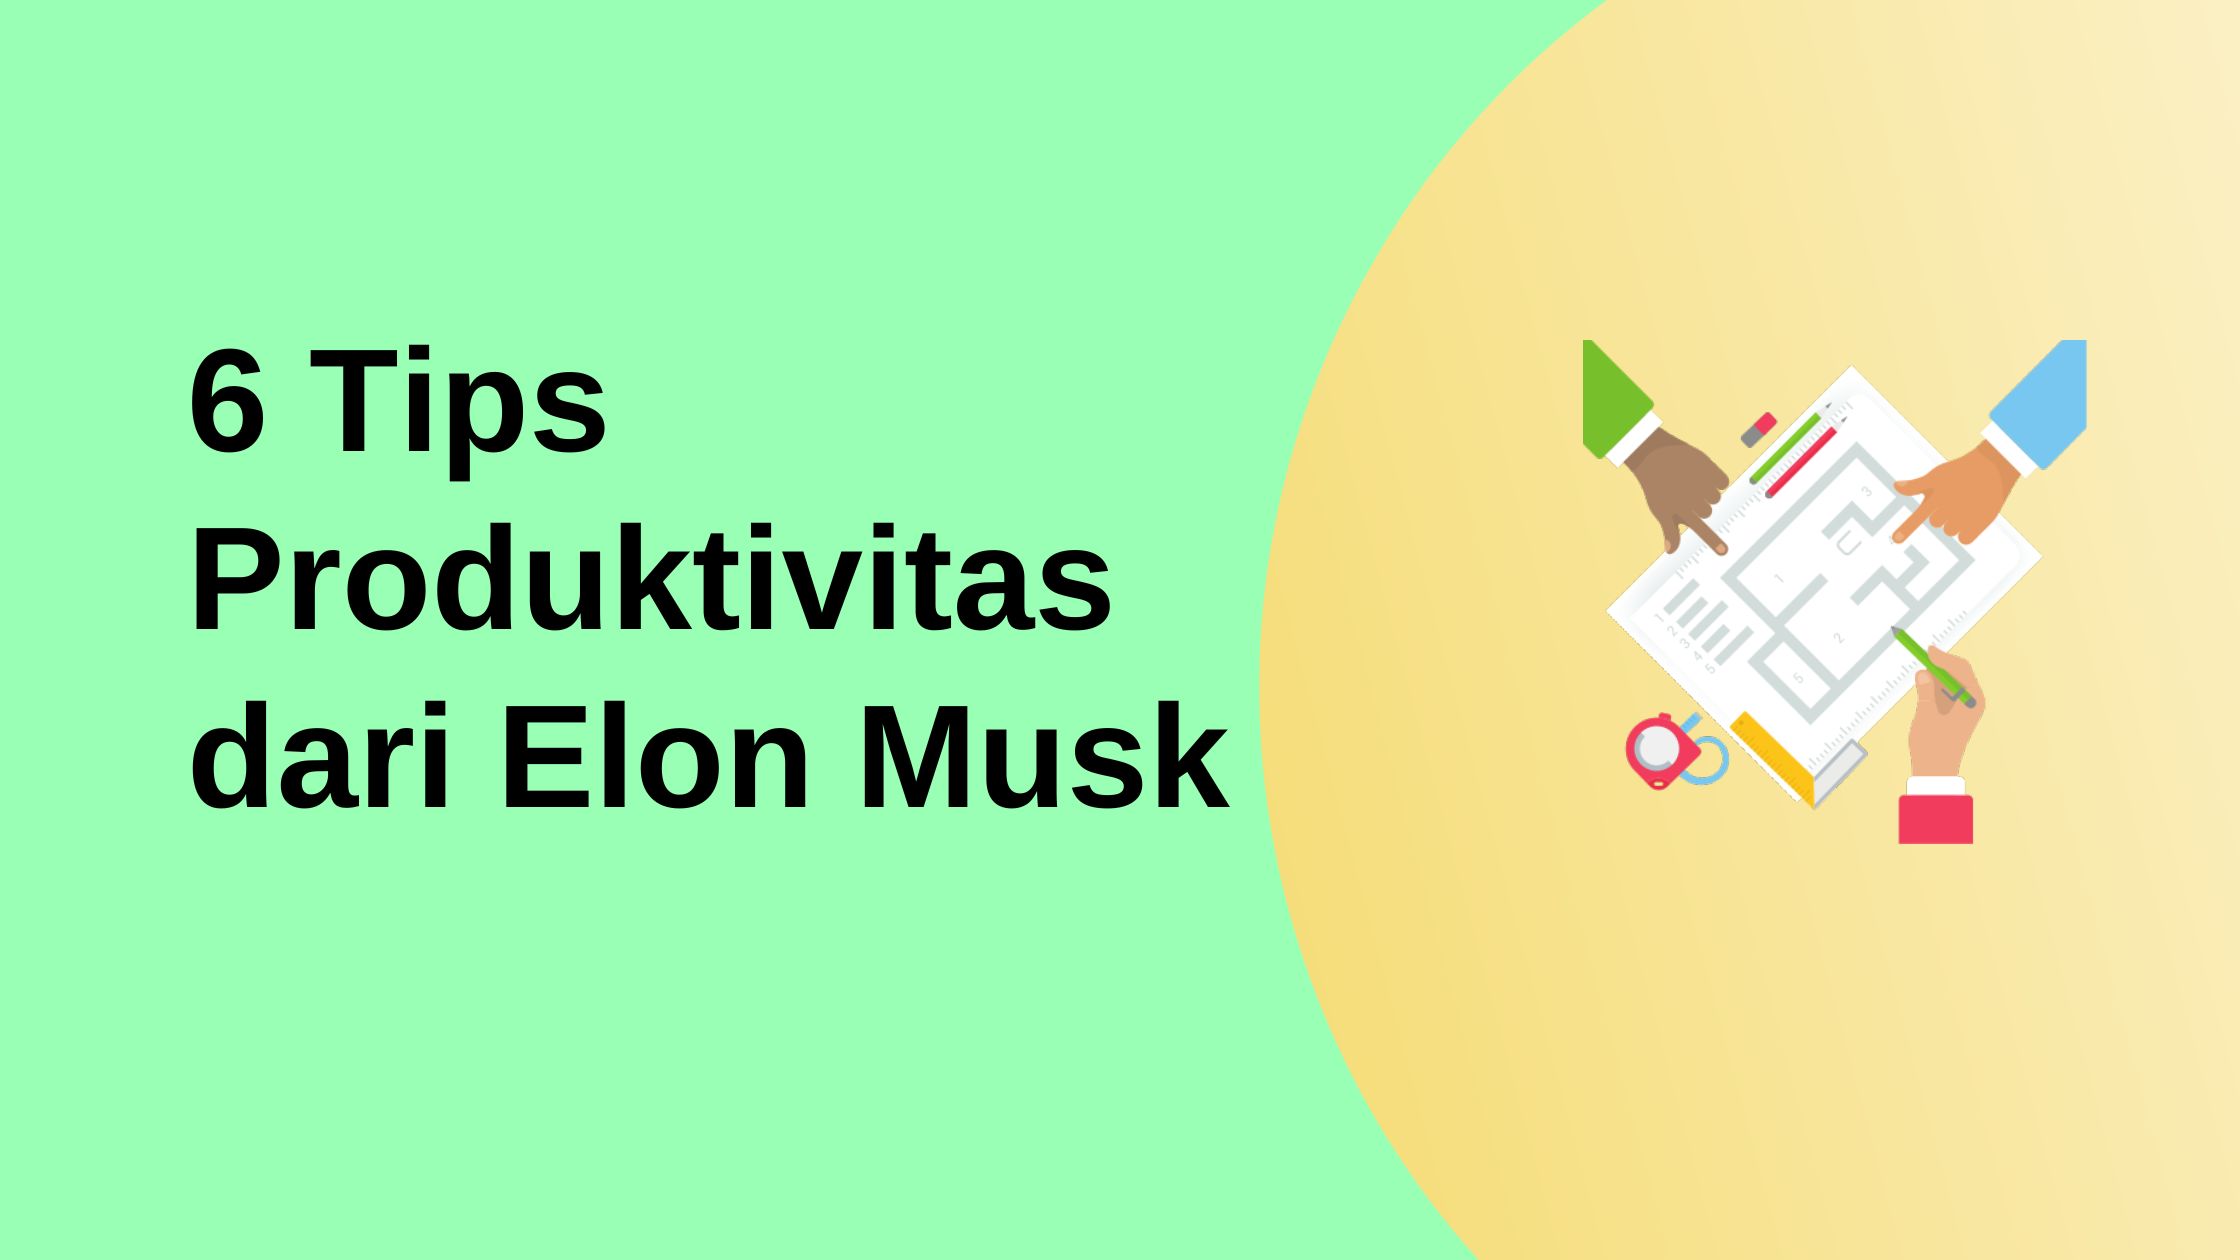 6 tips produktivitas dari Elon Musk